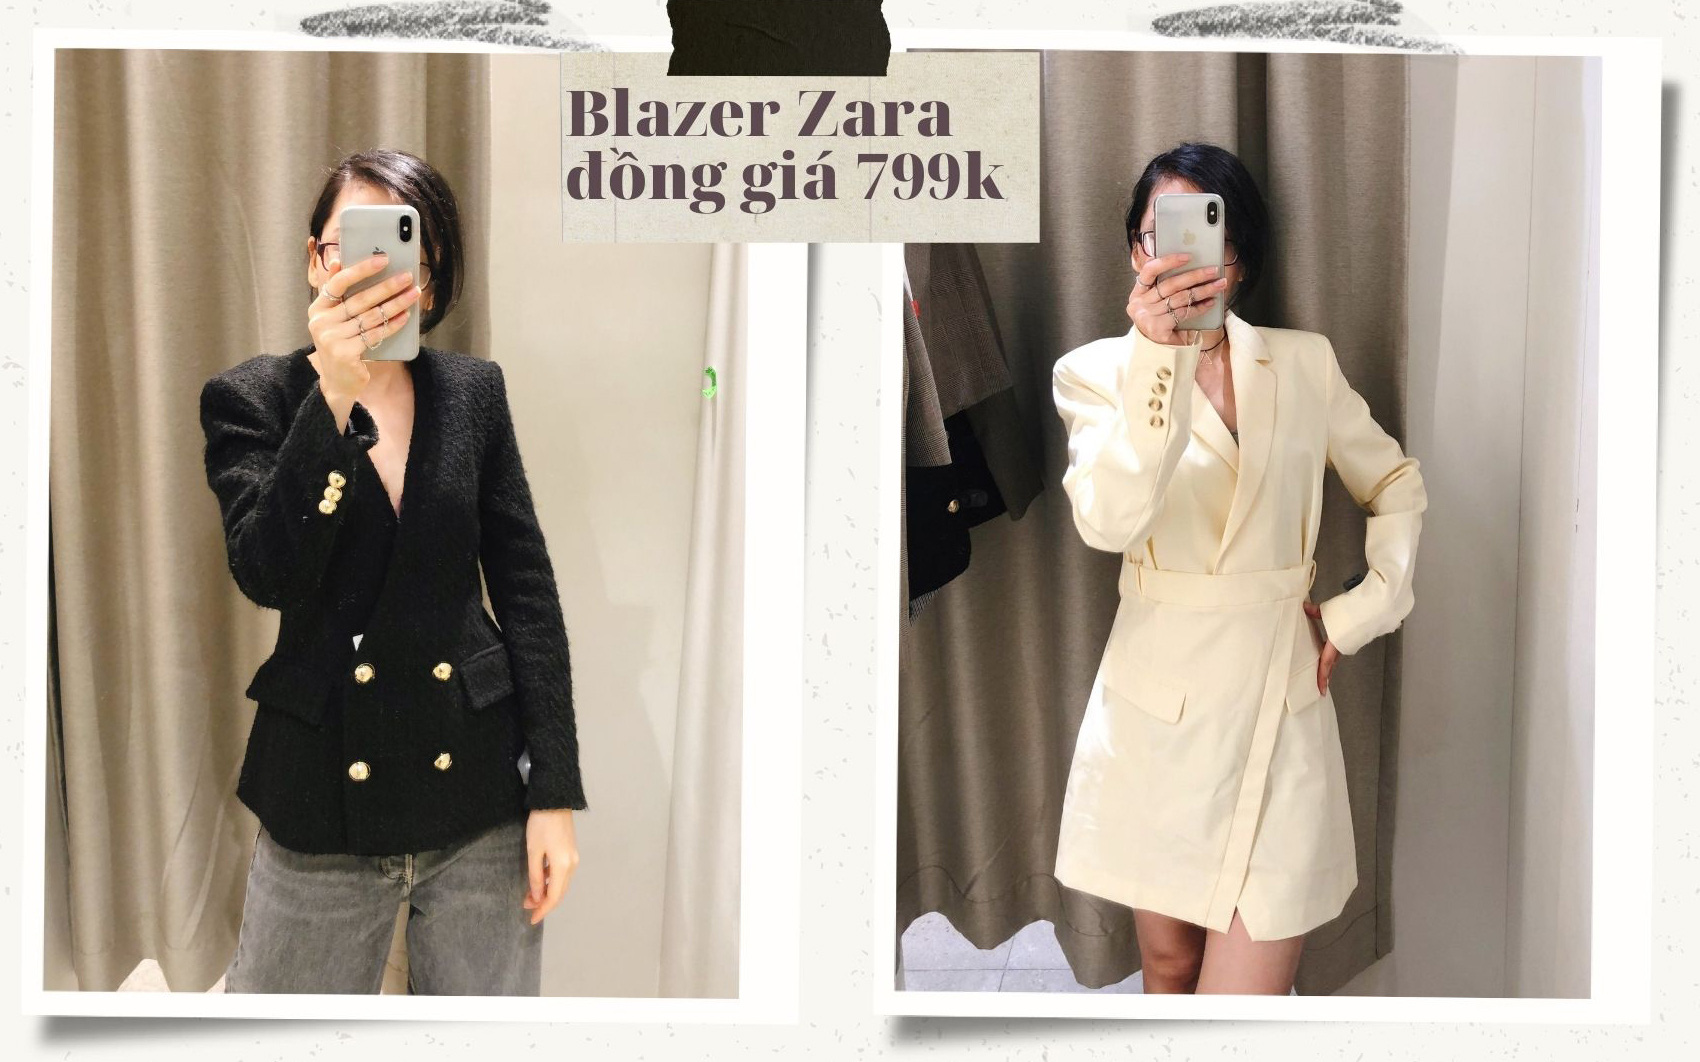 Blazer Zara sale đồng giá 799k: Áo vải tweed đẹp mê, chuẩn style sang chảnh của chị đẹp Son Ye Jin